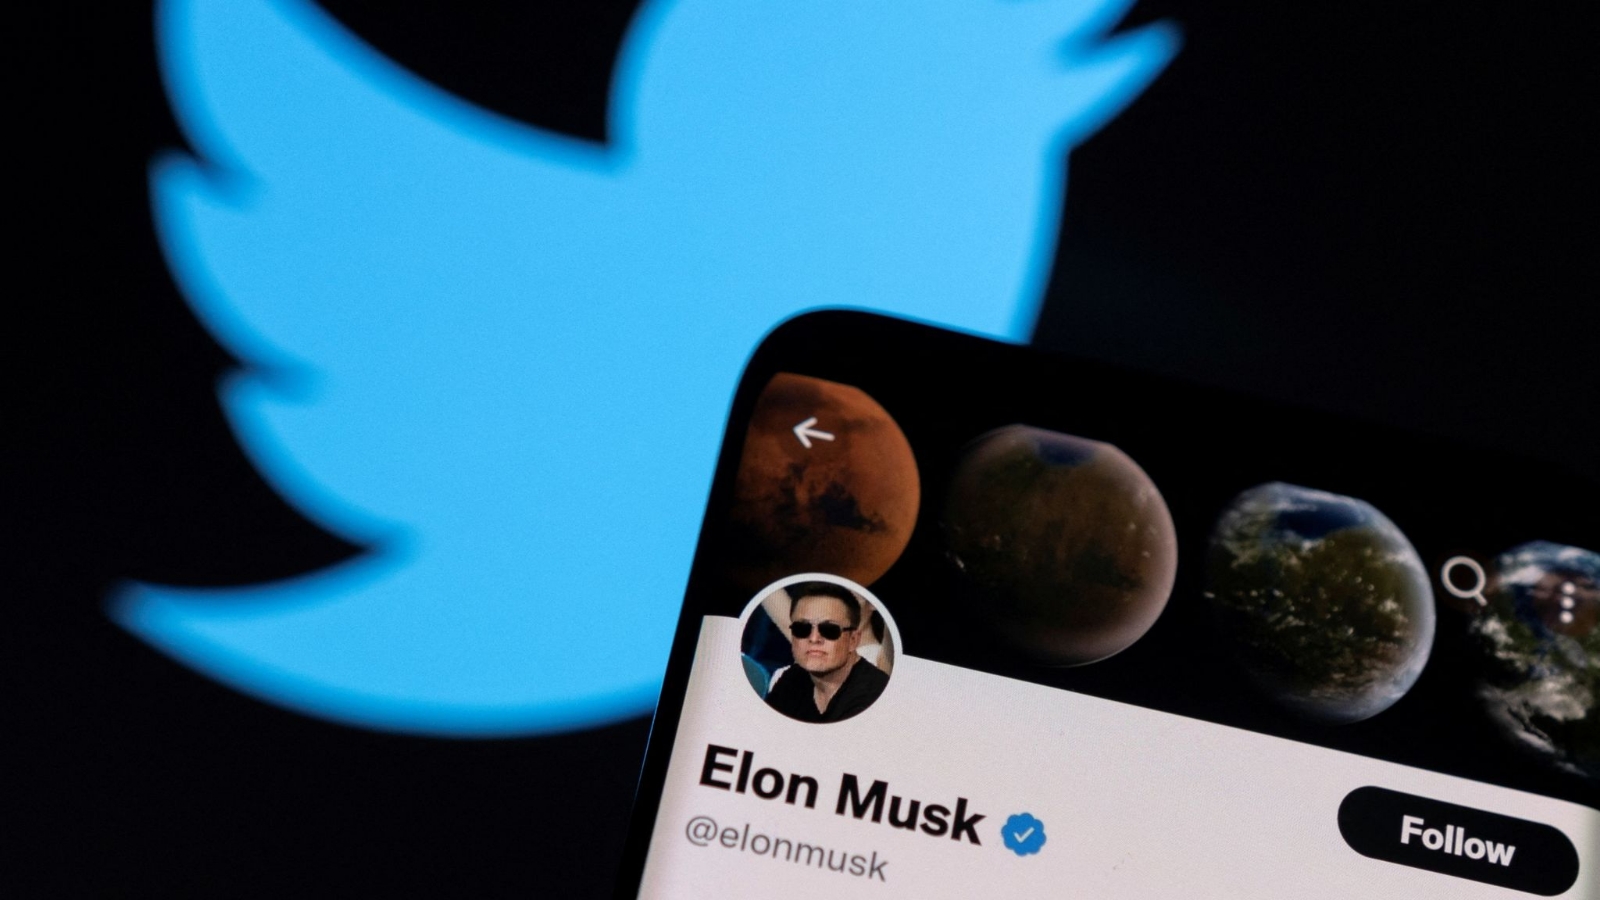 Elon Musk es el nuevo dueño de Twitter por comprarlo en más de 40 mil millones de dólares